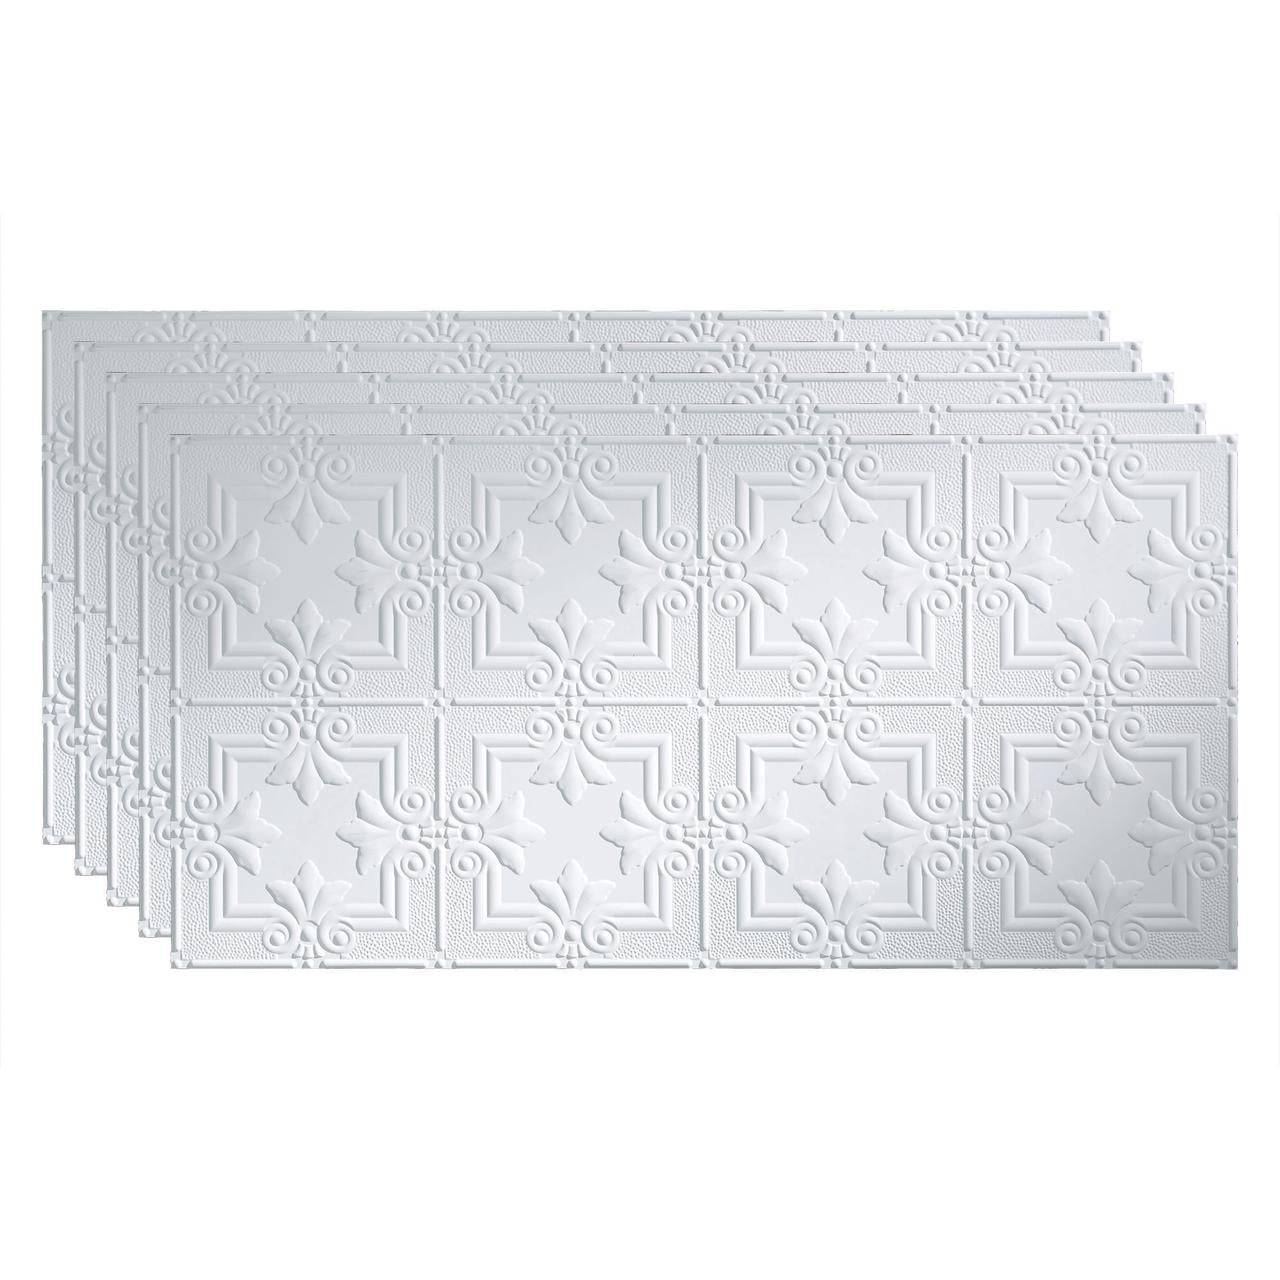 Fasade Regalia 2ft x 4ft Vinyl Glue Up Ceiling Tile in Matte White 5pk